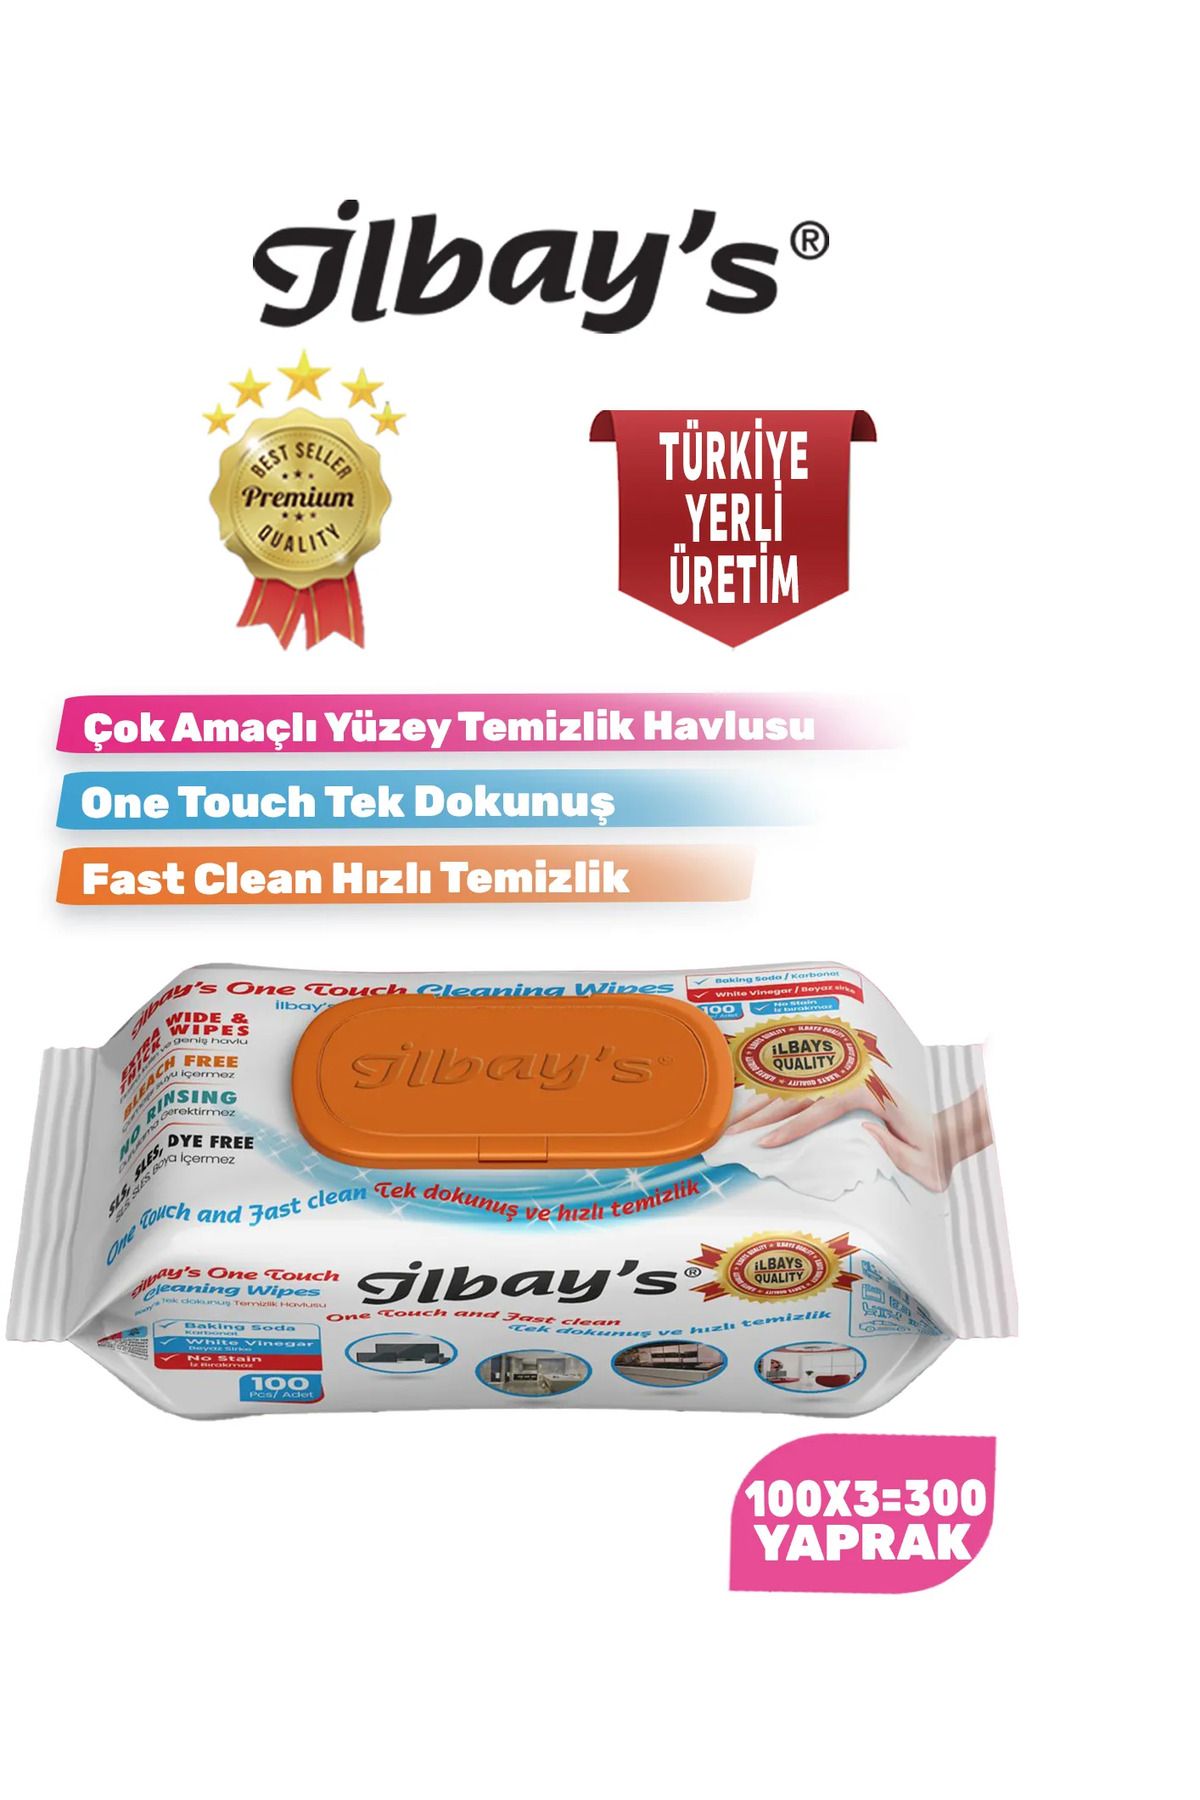 İlbay's Easy Clean Çok Amaçlı Yüzey Temizlik Islak Havlusu Temizlik  Bezi 100x3=300 Yaprak